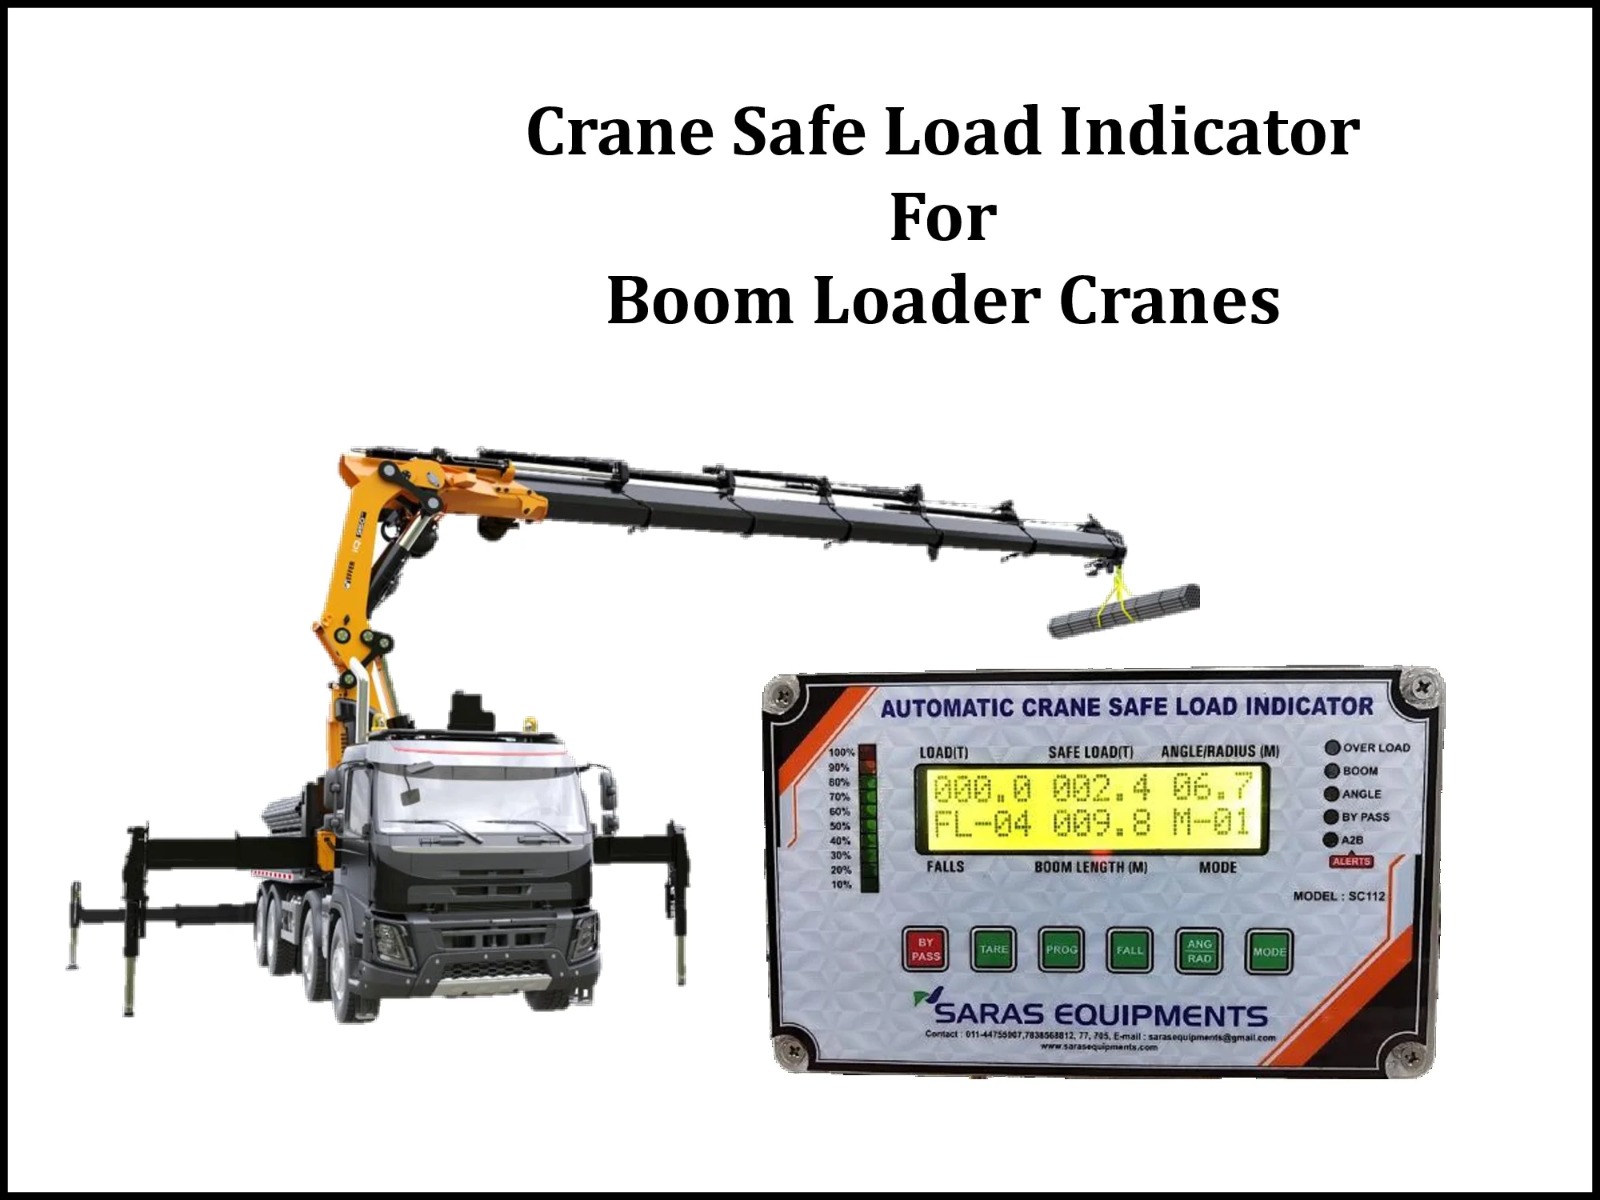 Crane Safe Load Indicator for Boom Loader Crane